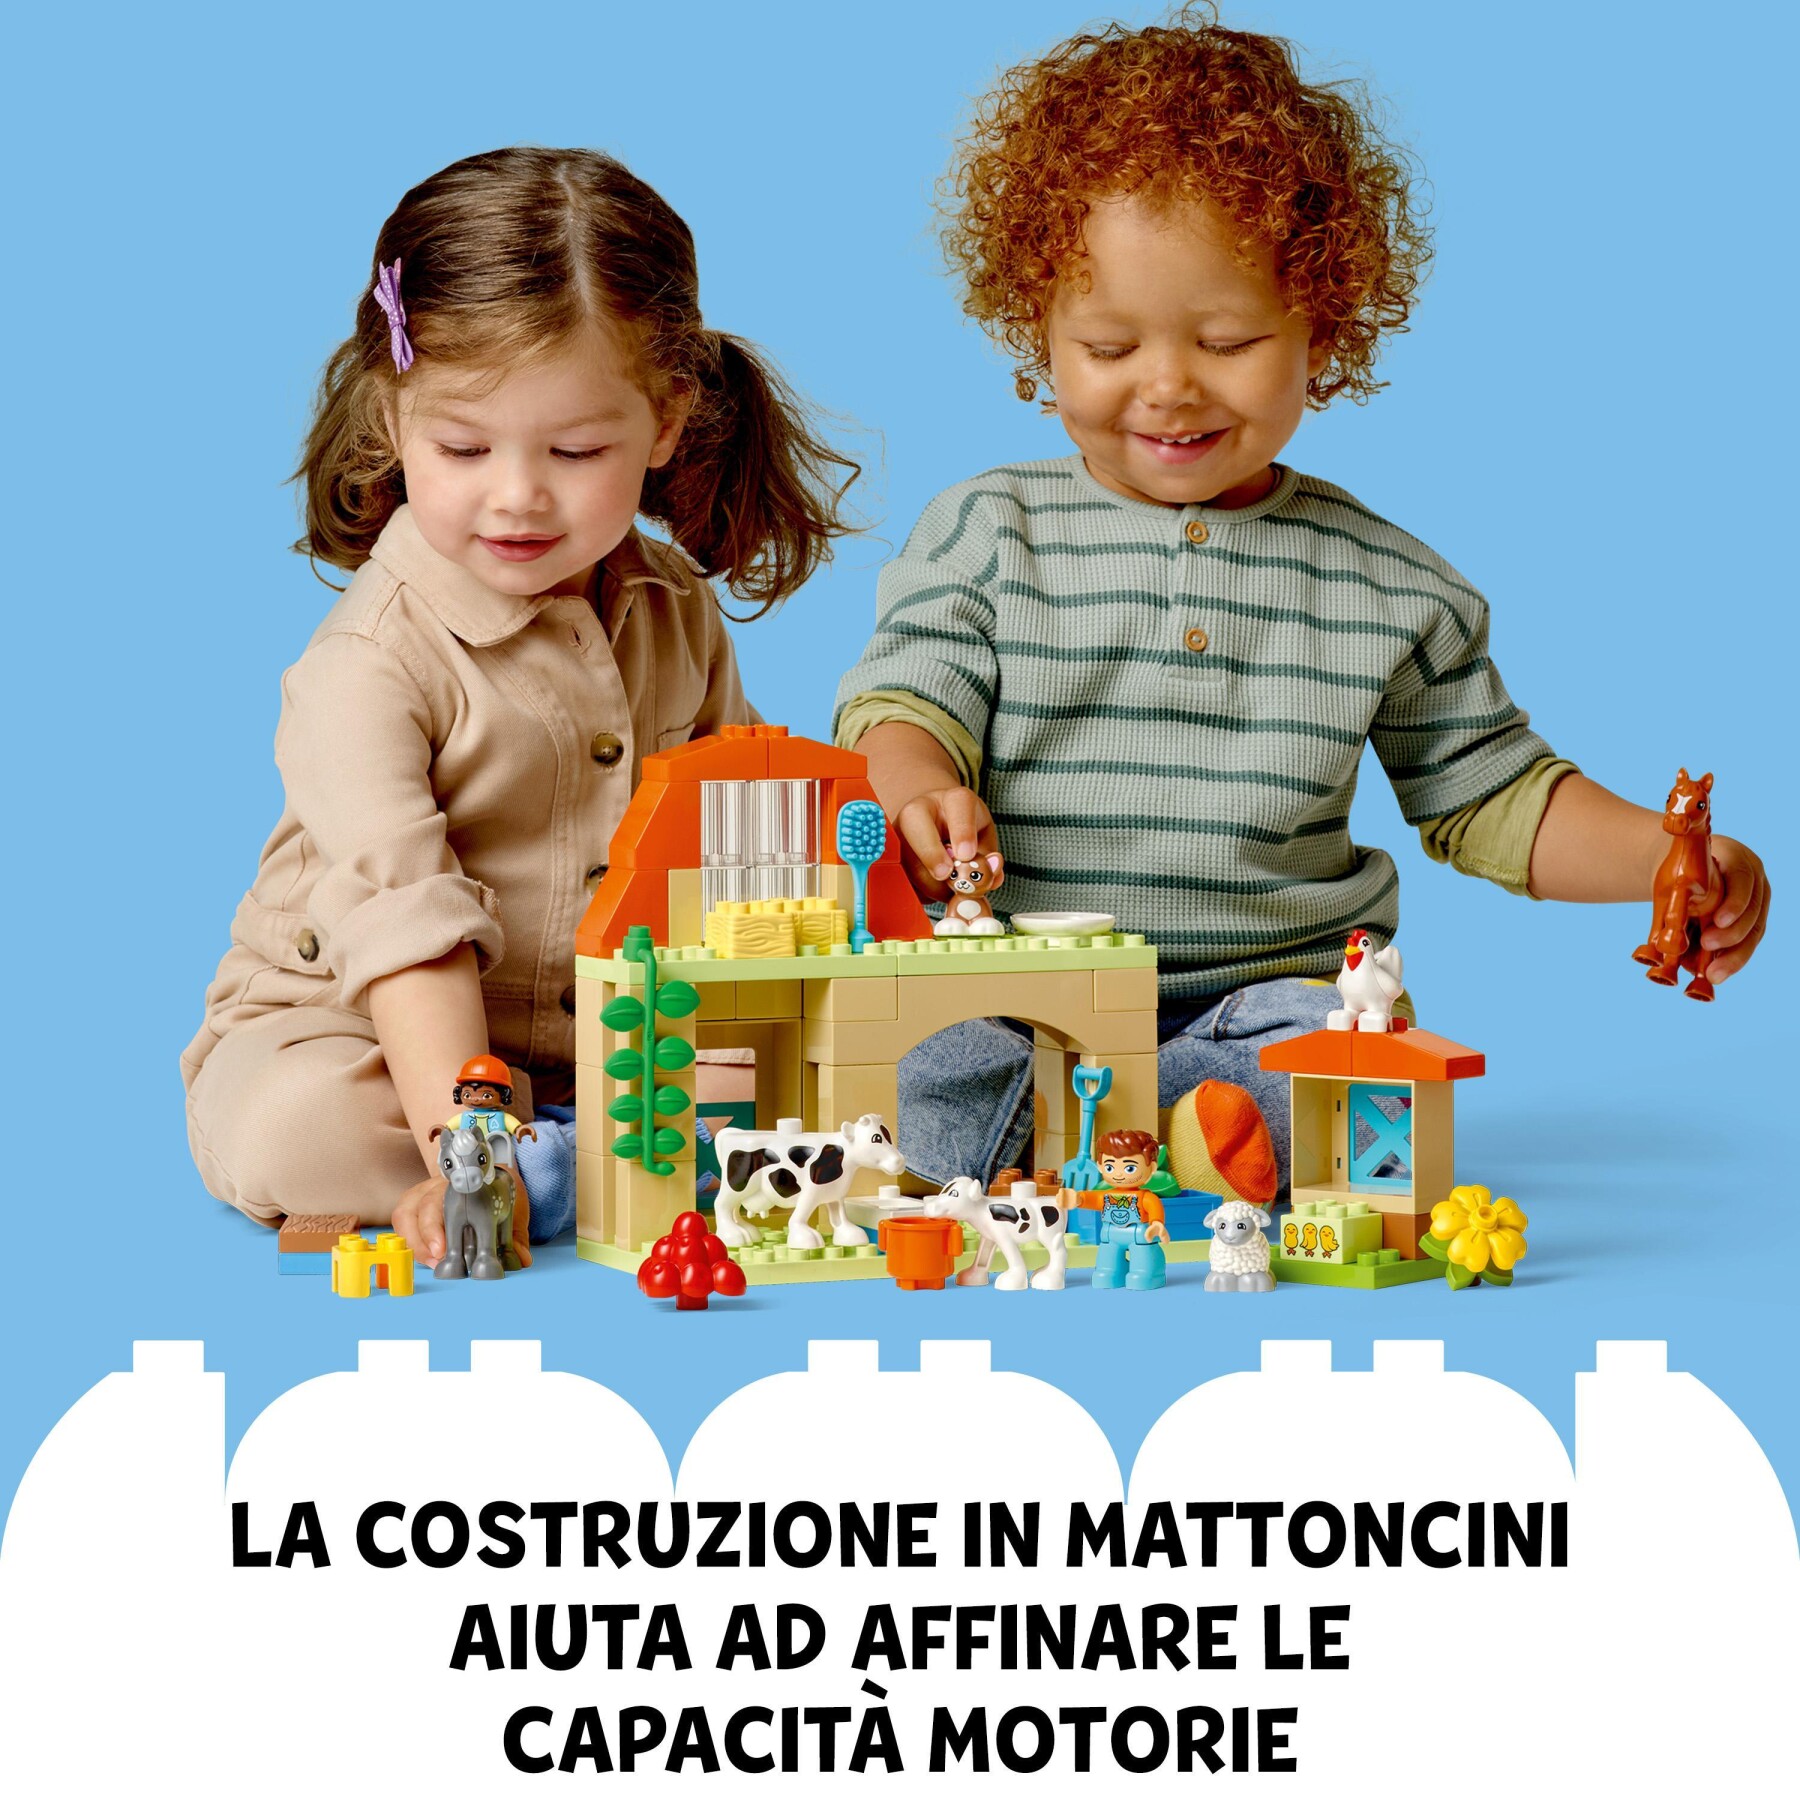 Lego duplo 10416 cura degli animali di fattoria giocattolo, gioco di ruolo educativo per bambini 2+ con figure giocattolo - LEGO DUPLO